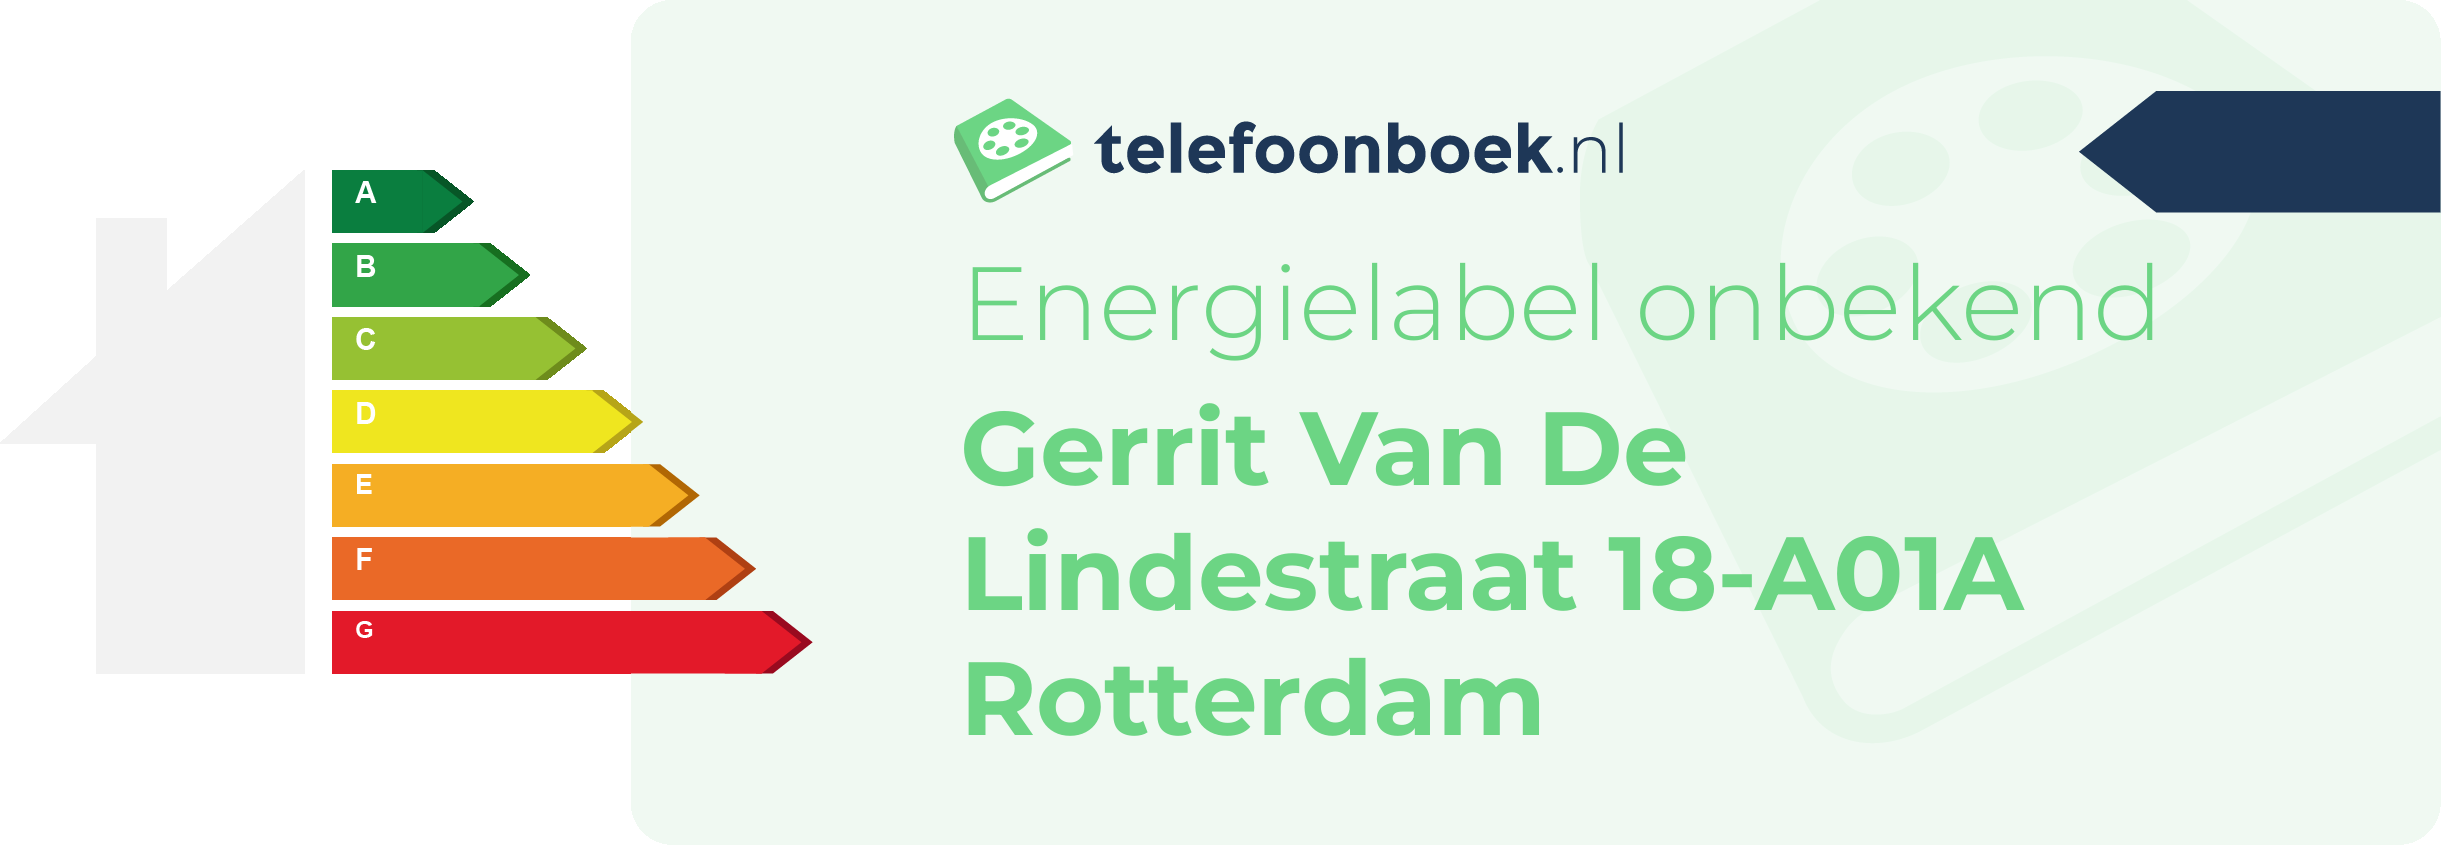 Energielabel Gerrit Van De Lindestraat 18-A01A Rotterdam